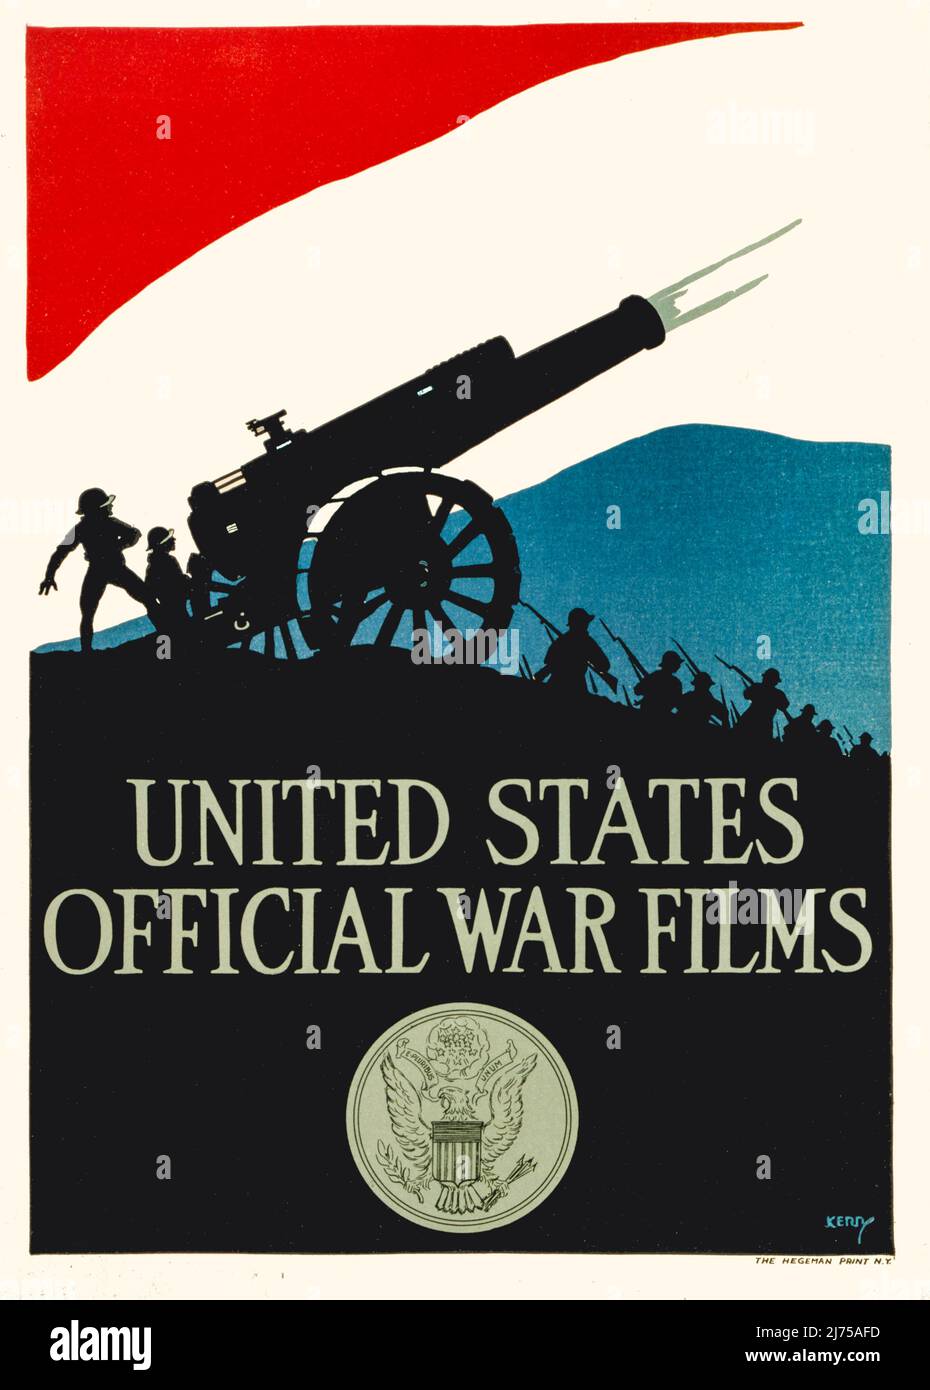 Une affiche publicitaire américaine du début du 20th siècle de la première Guerre mondiale, 1914-1918, pour les films officiels de guerre. L'illustration montre des silhouettes de soldats, tirant un canon contre un ciel rouge, blanc et bleu, avec le sceau des États-Unis en dessous. L'artiste est inconnu. Banque D'Images